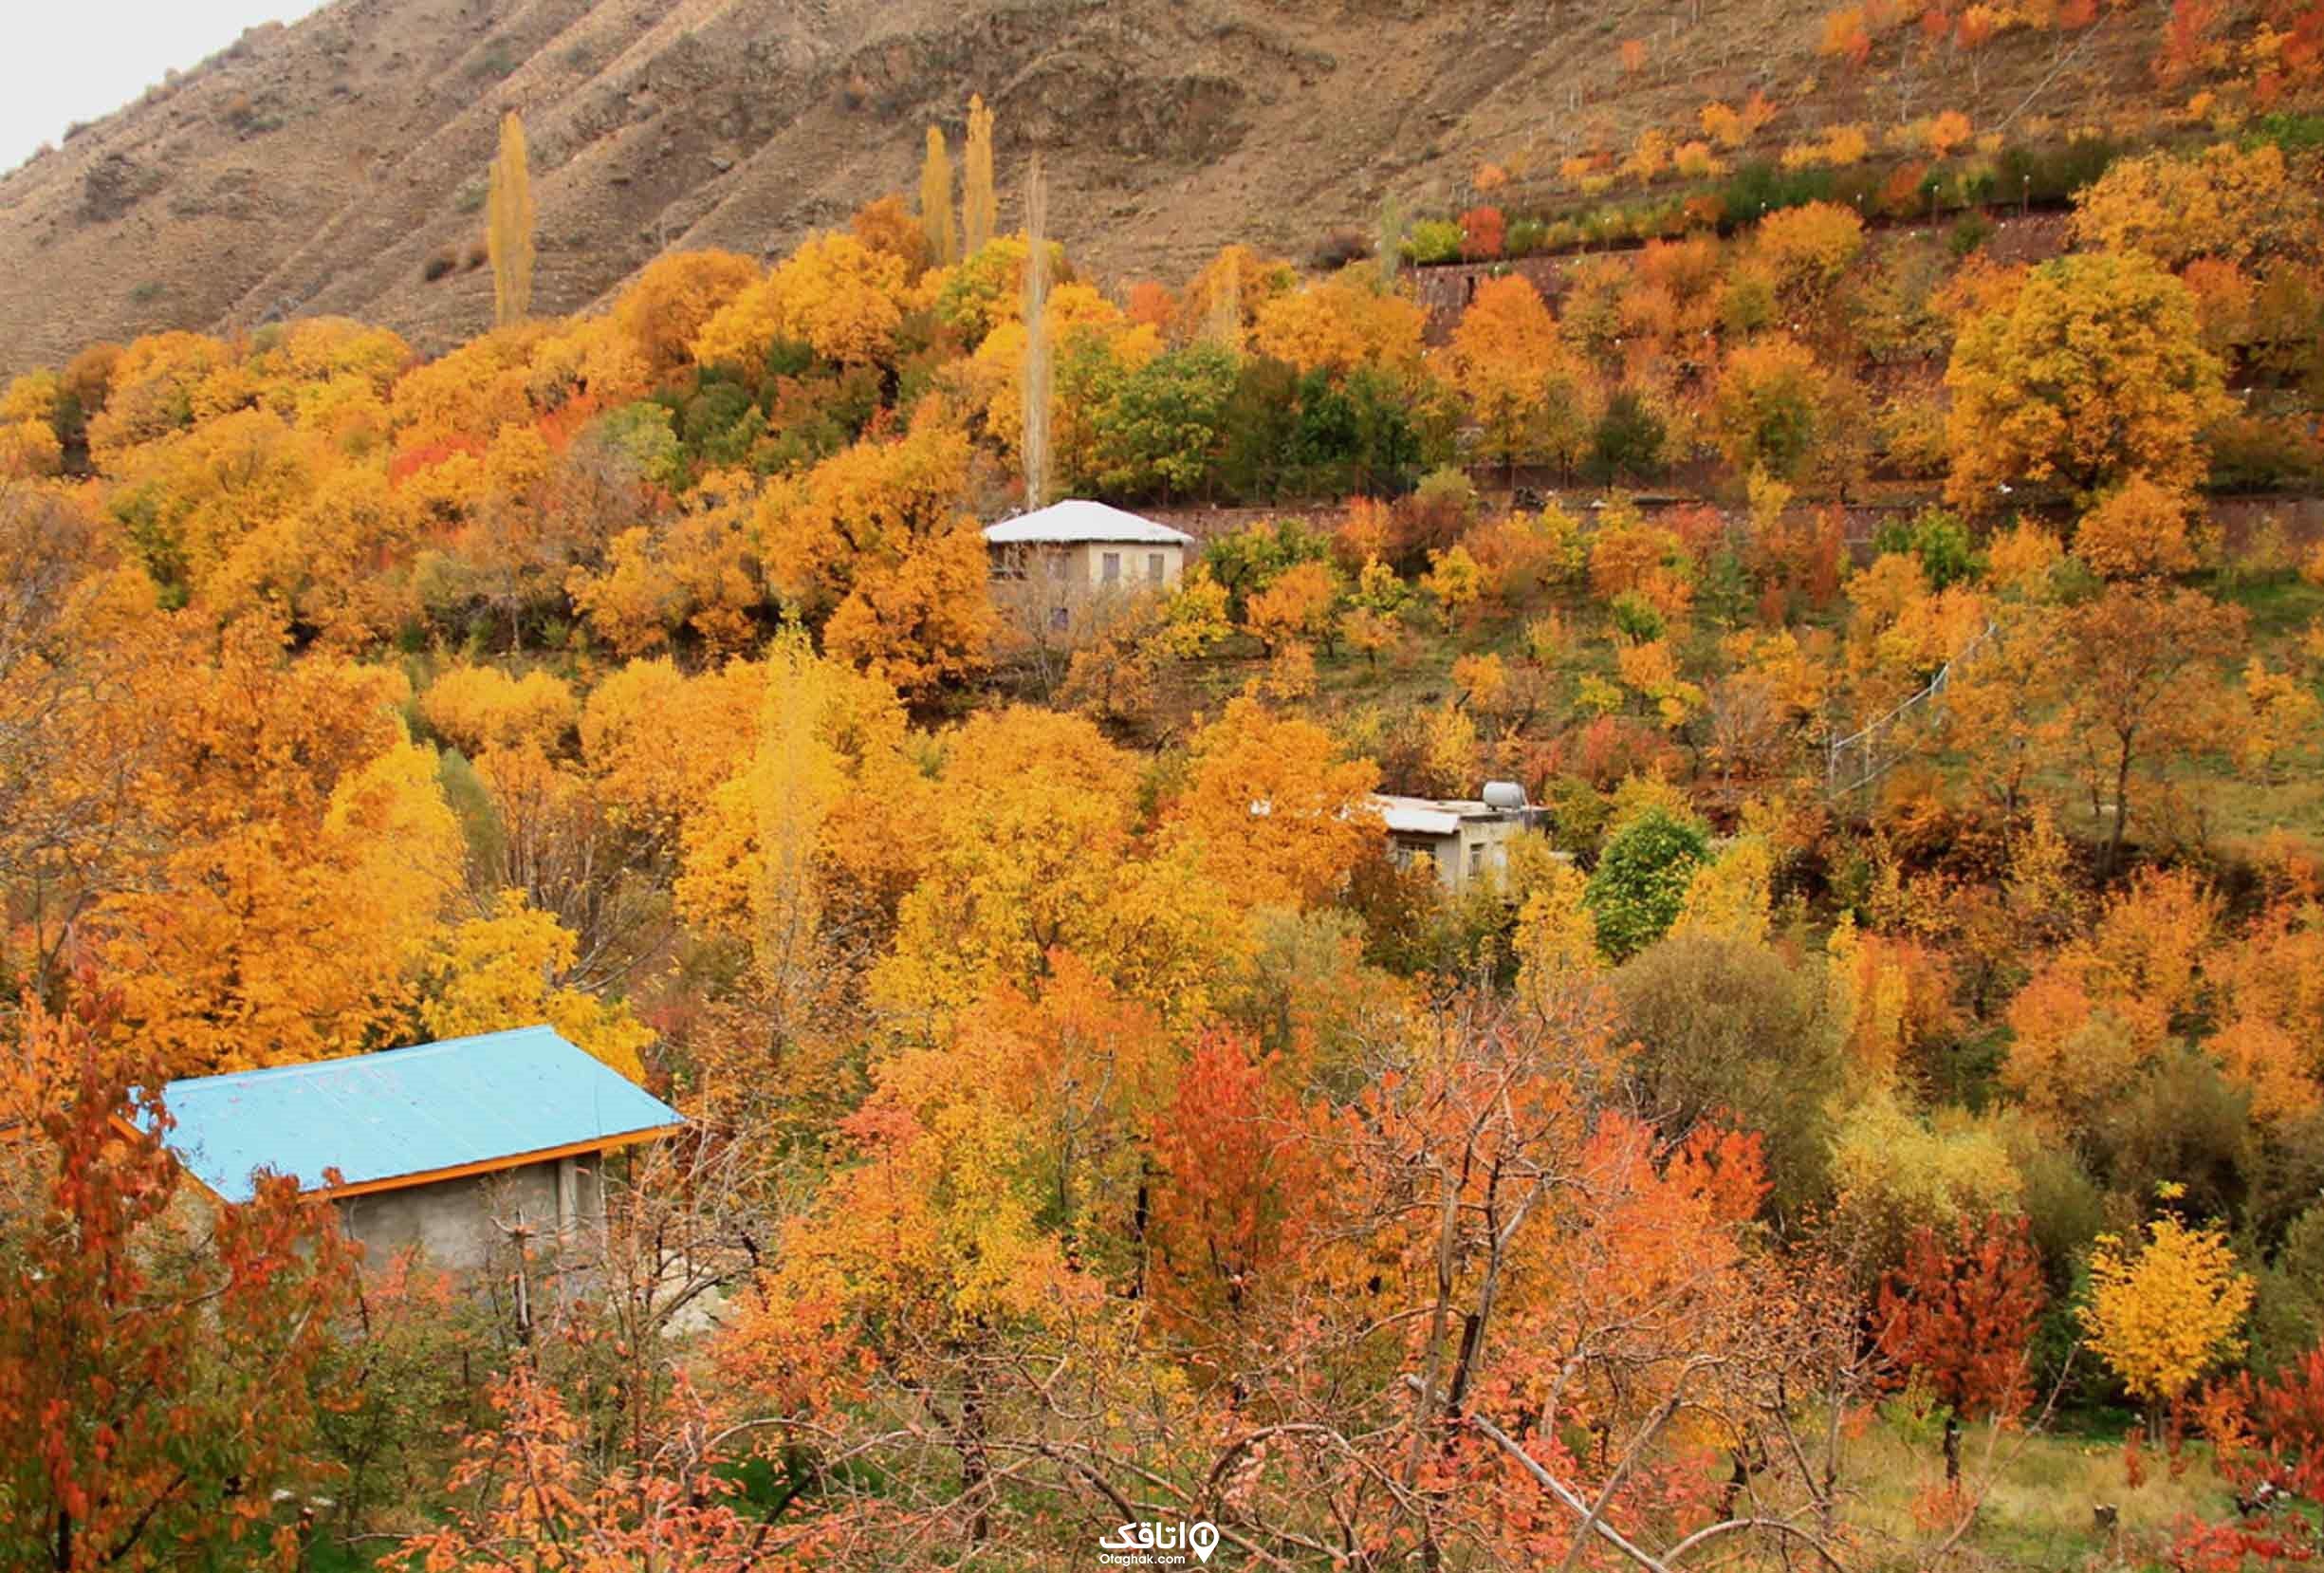 درختان نارنجی رنگ شده در فصل پاییز روی کوه که در میان ان ها سه خانه پیداست